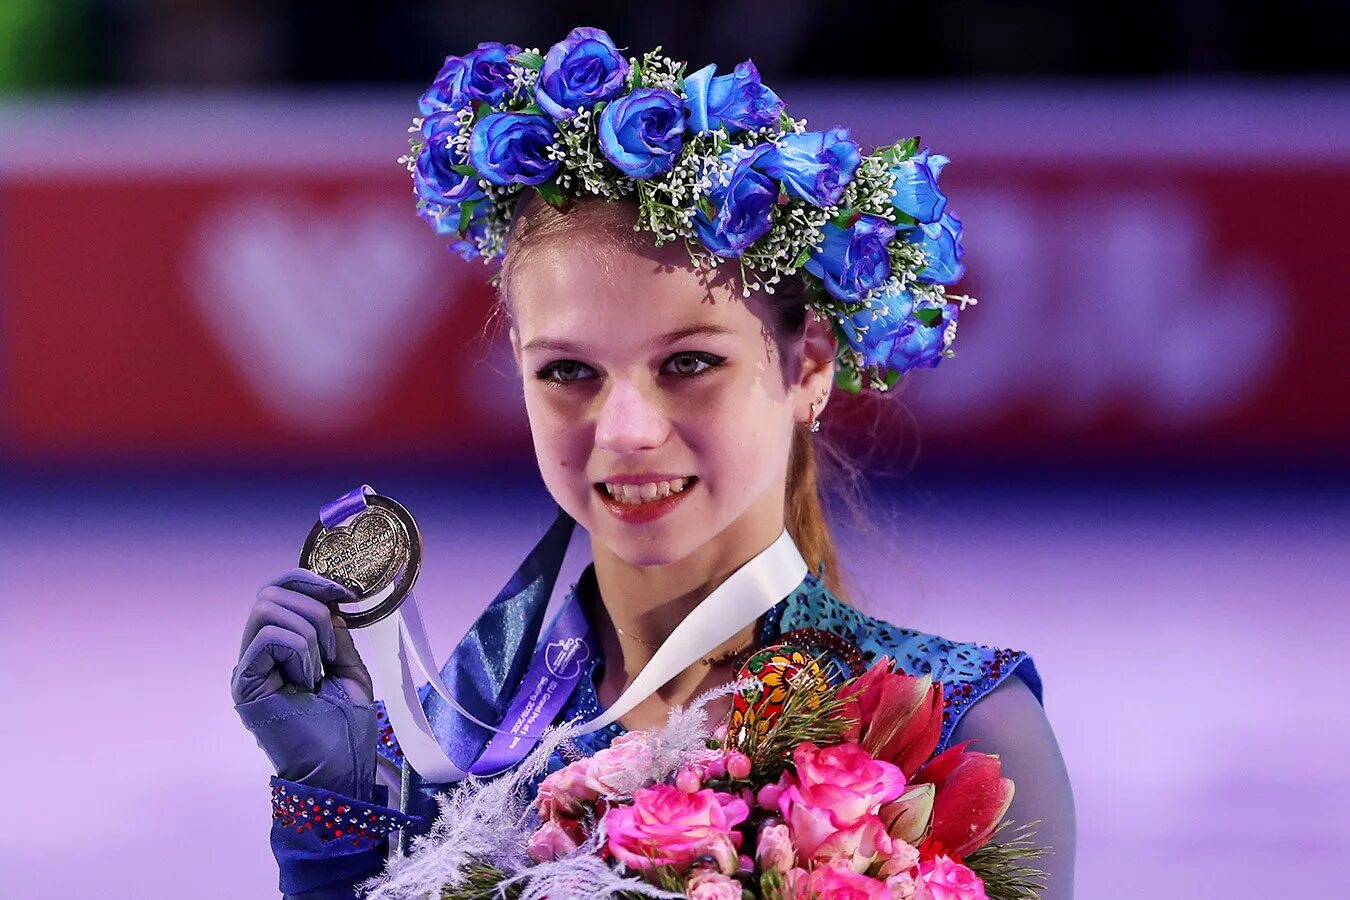 Саша Трусова фигуристка. Чемпион по фигурному катанию среди юниоров